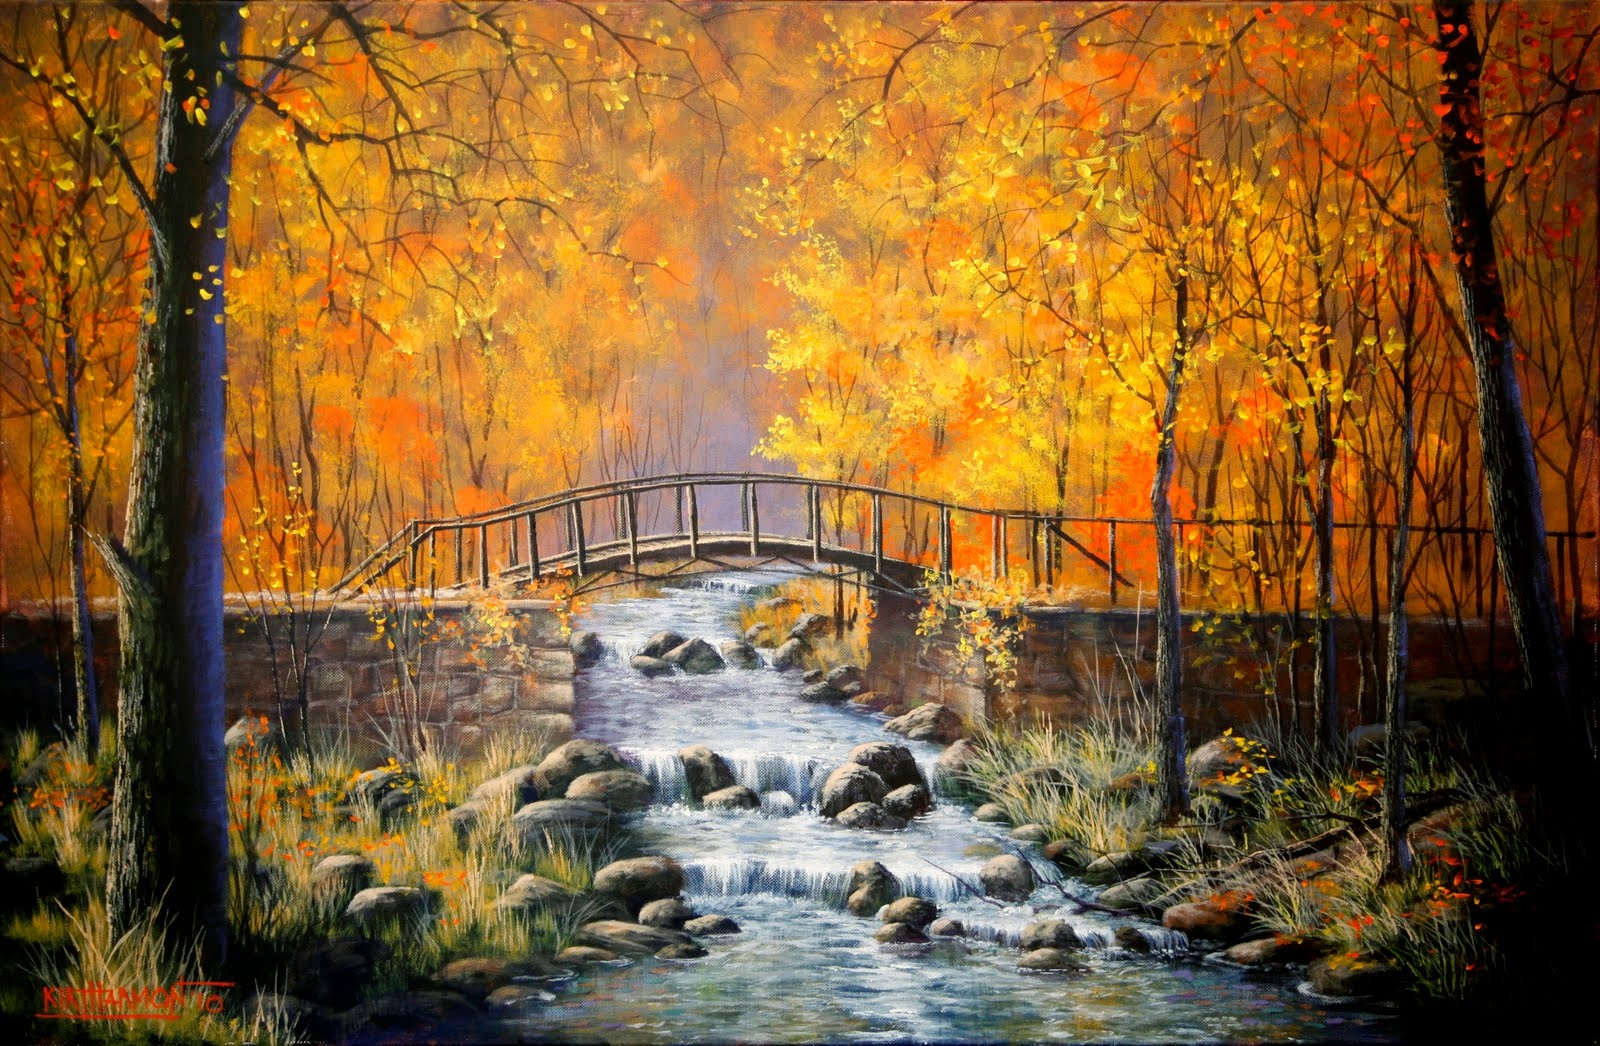 Скачать обои бесплатно Река, Осень, Лес, Дерево, Мост, Ручей, Картина, Художественные картинка на рабочий стол ПК